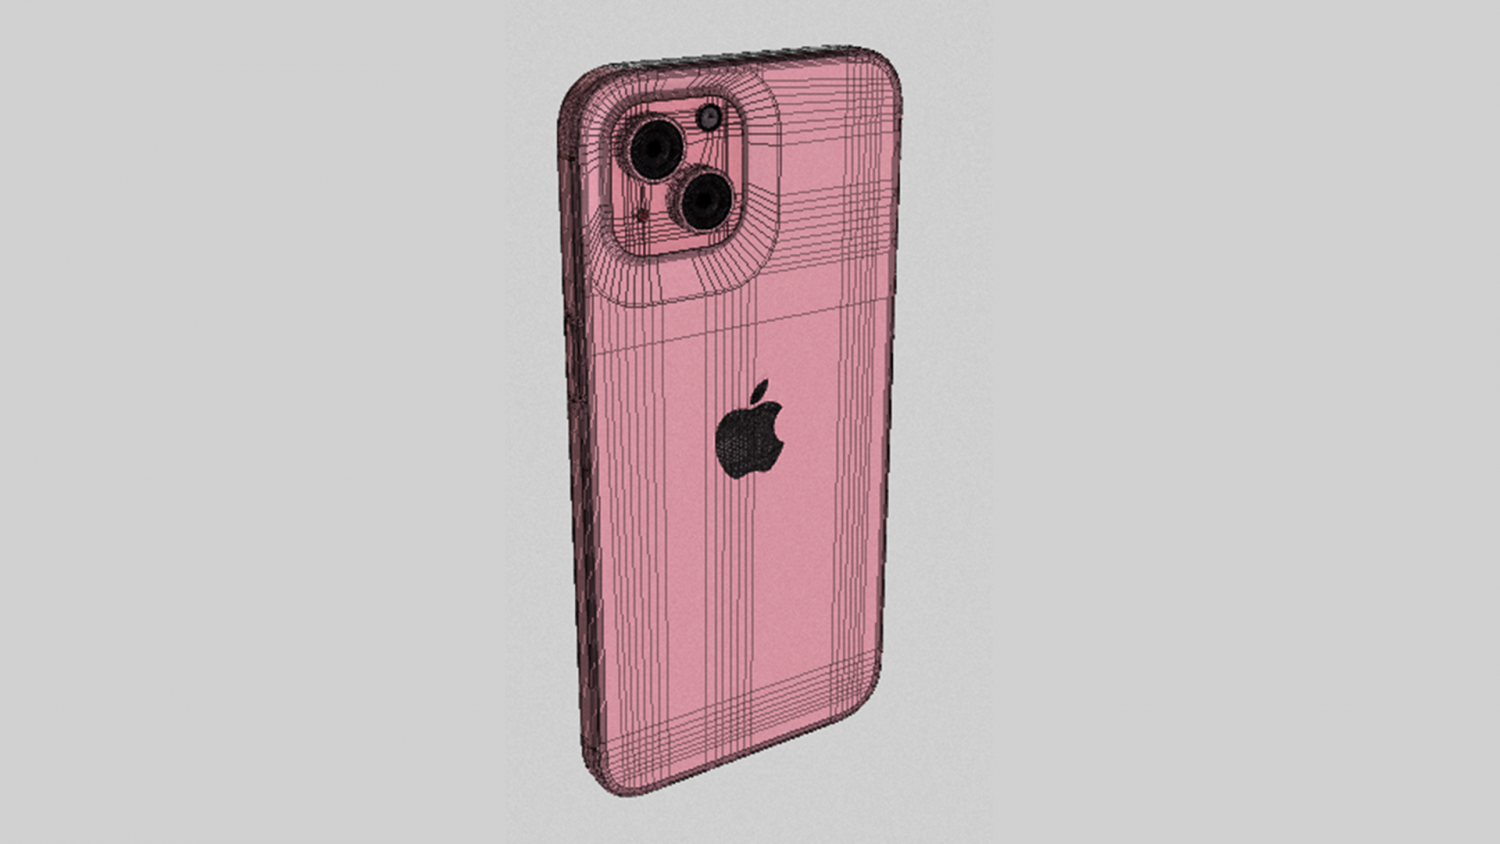 Apple iPhone 15 Mini Mobile Phone - 3D Model by azinkey